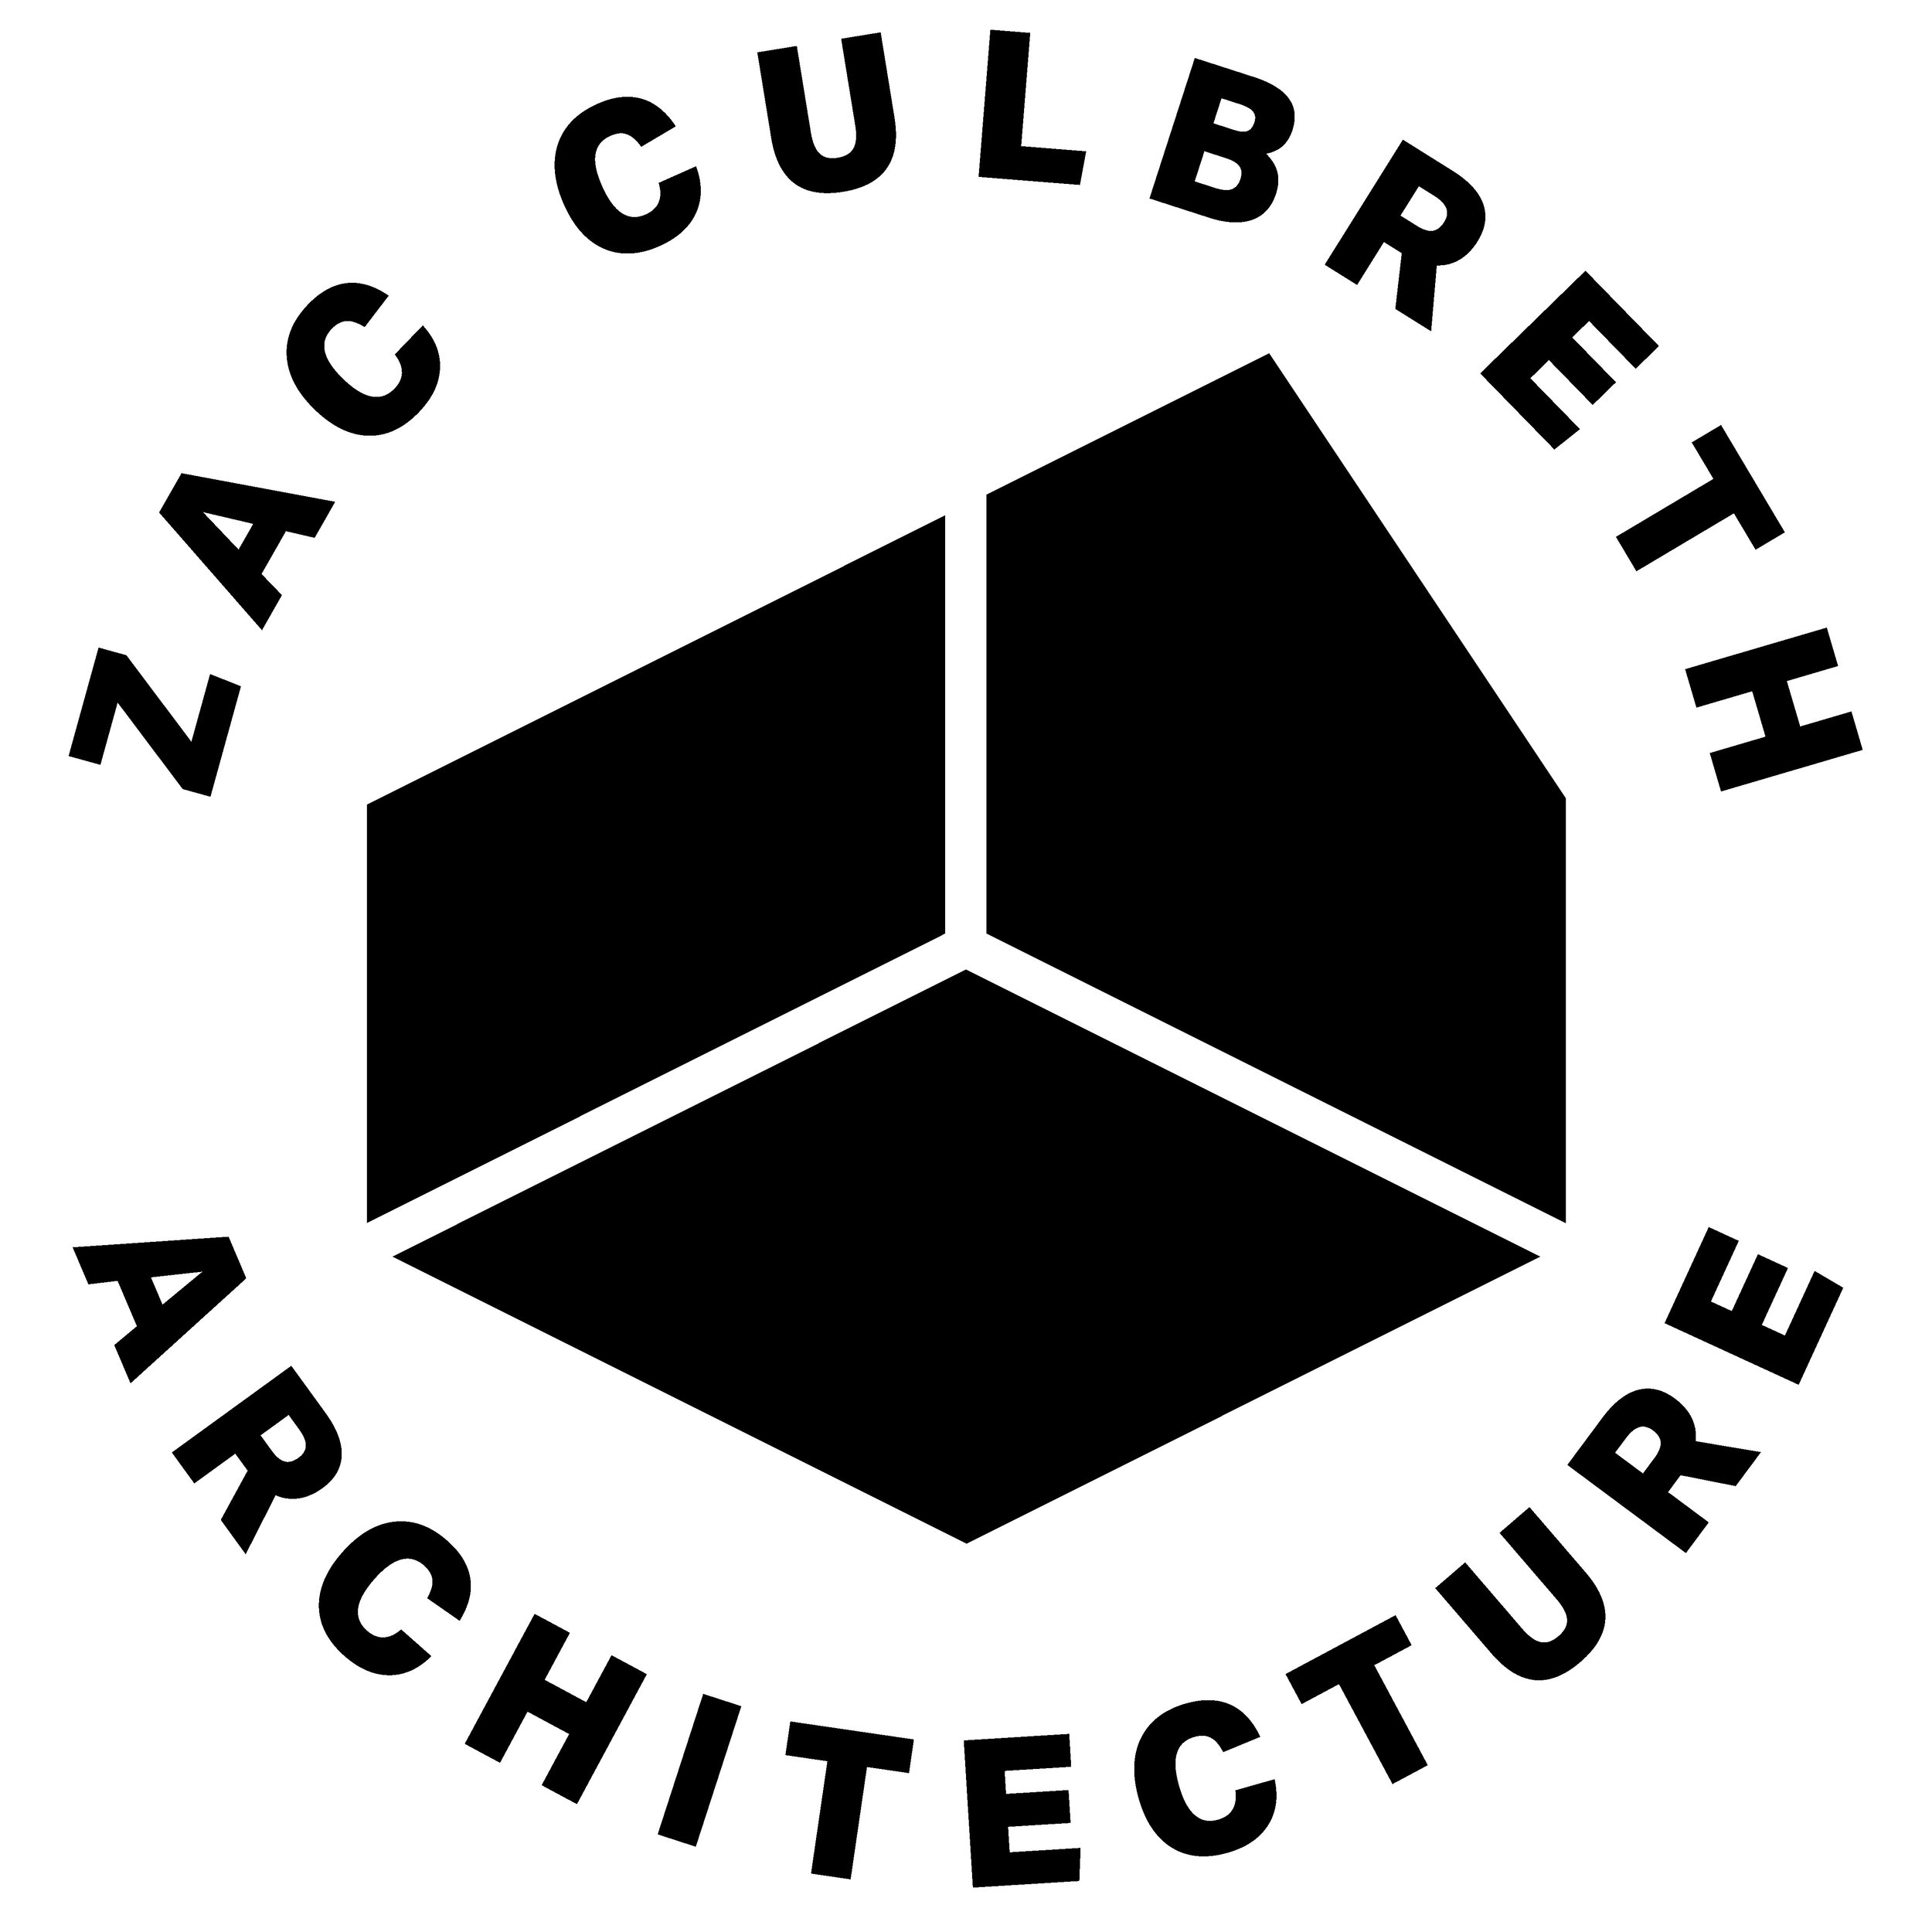 ZAC CULBRETH ARCHITECTURE